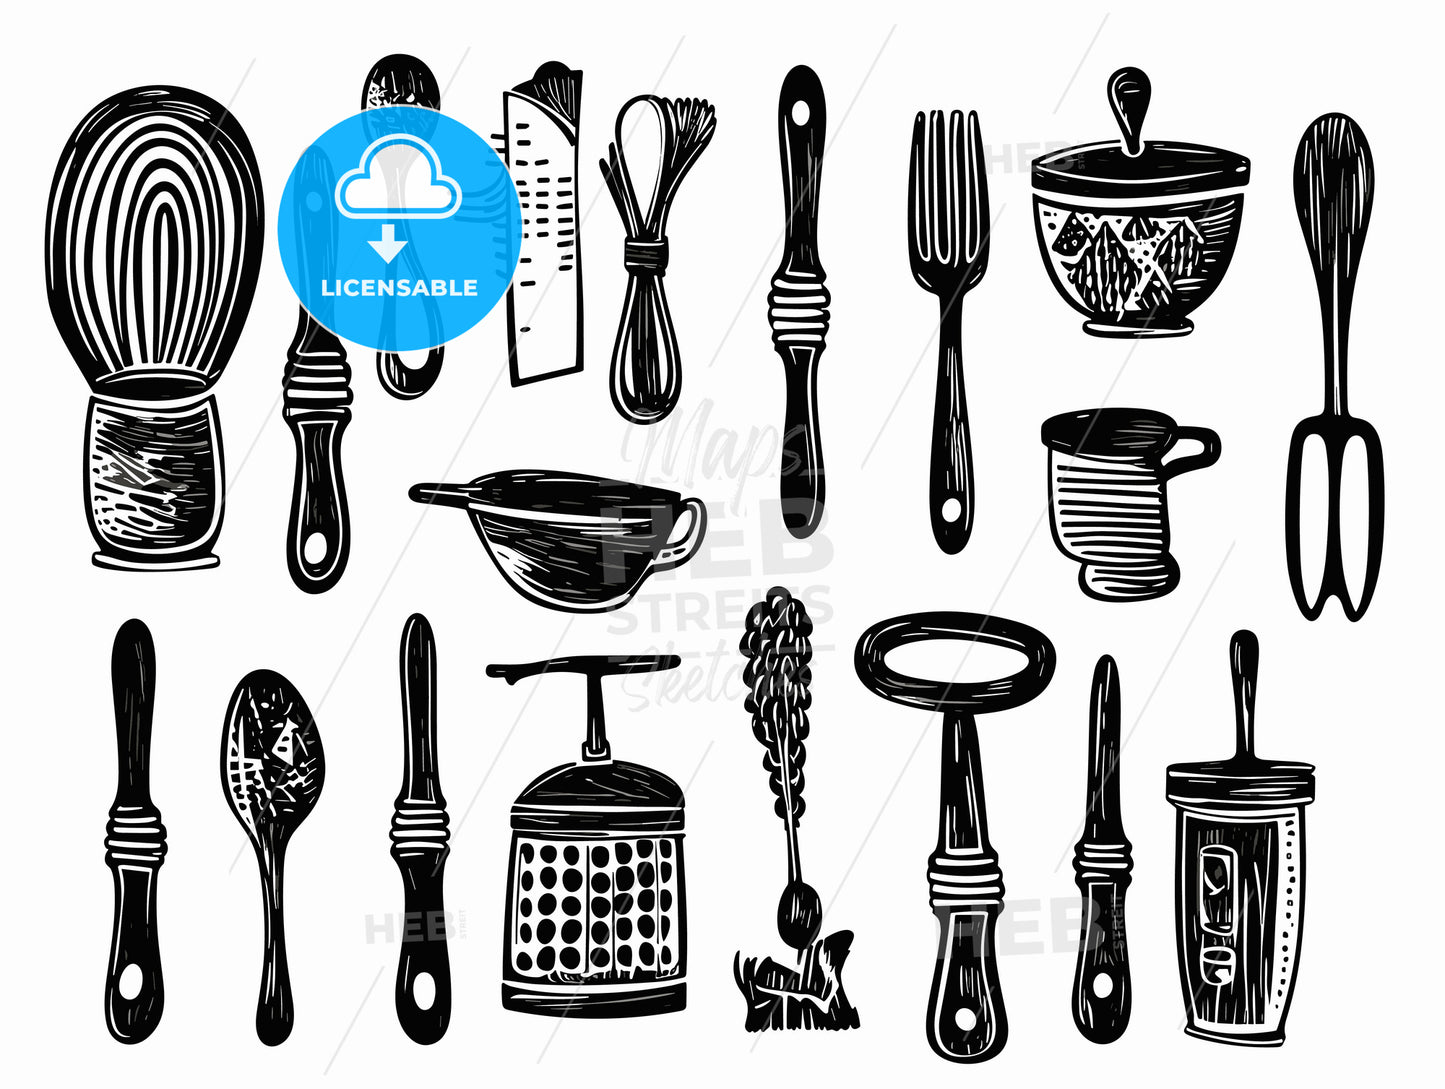 kitchen utensils.